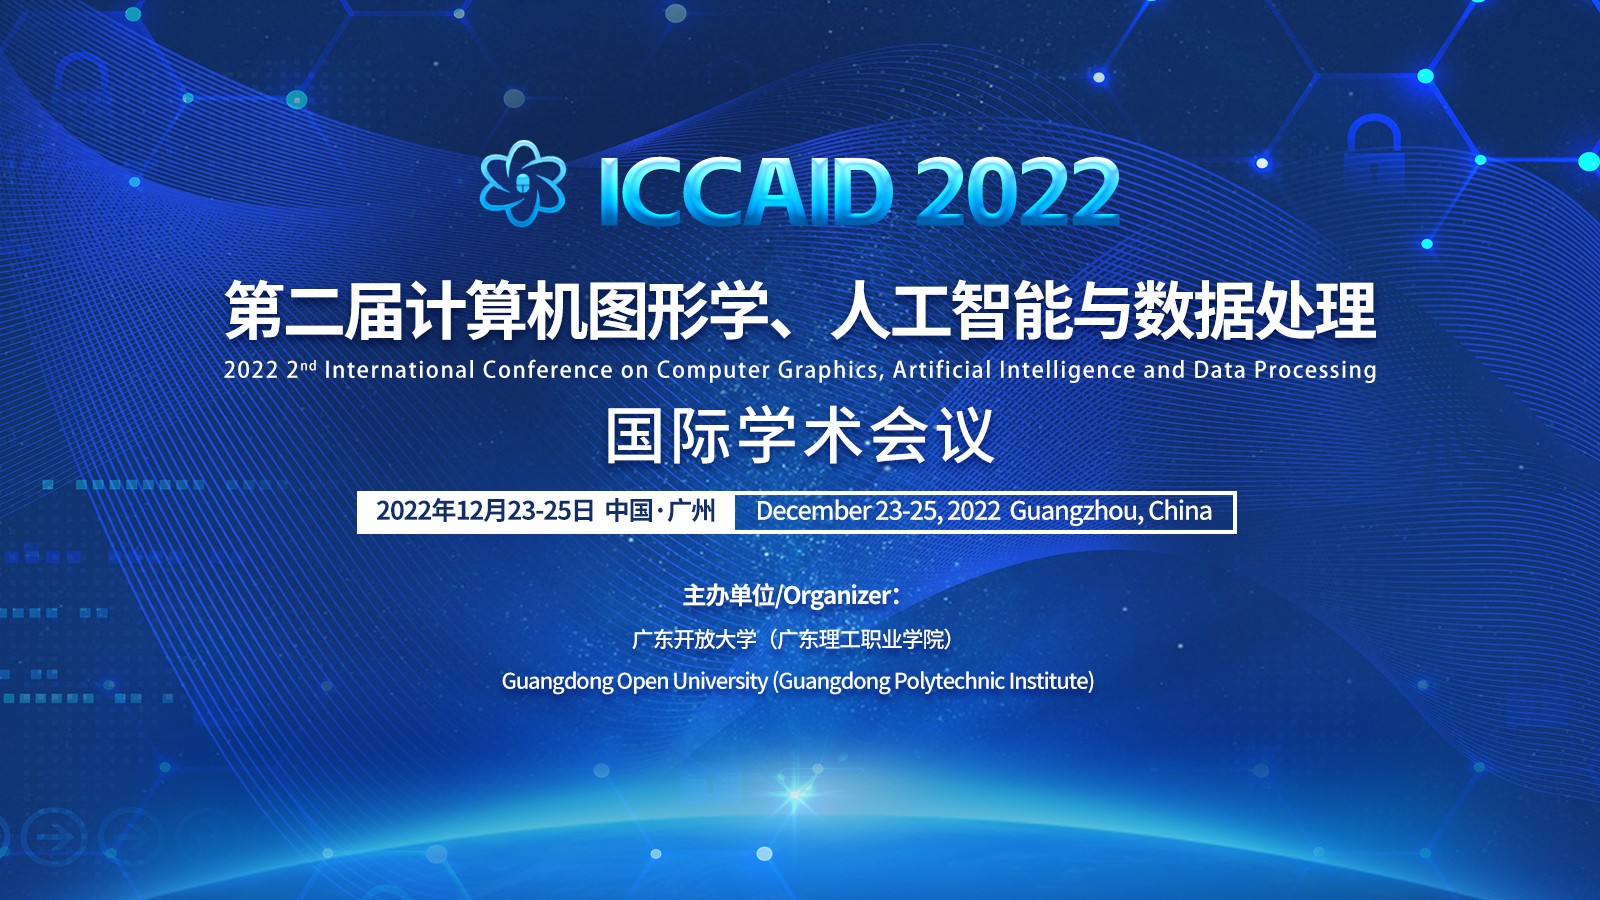 12月广州-ICCAID-2022-主视觉.jpg